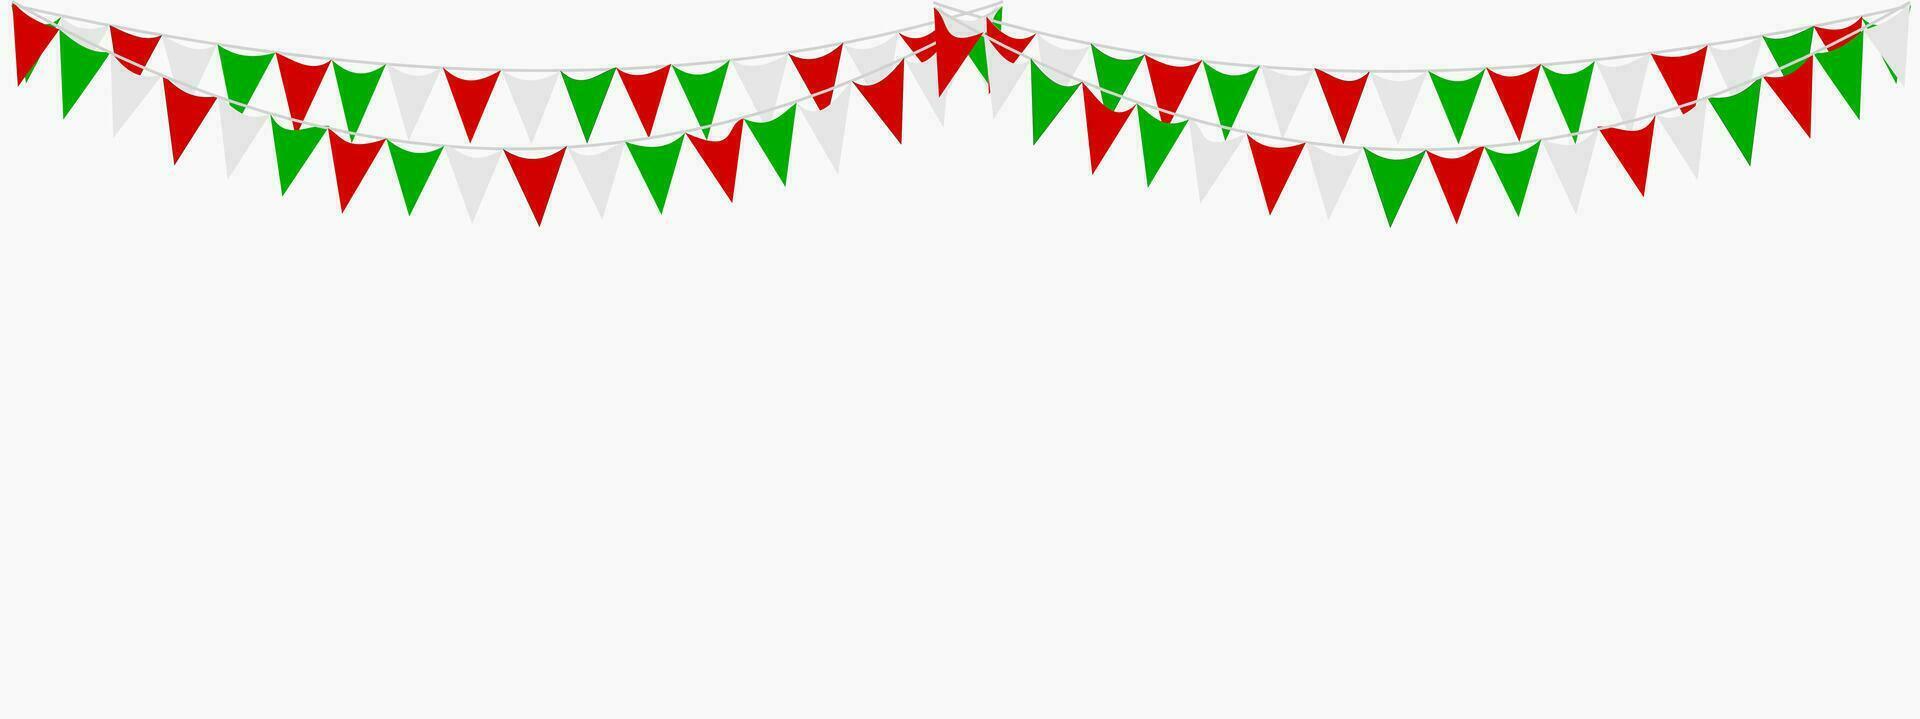 Italiaans republiek dag, 2e juni. vlaggedoek hangende rood wit groen vlag driehoeken banier achtergrond. Italië, iran, Portugal, Libanon, Wit-Rusland, bulgarije, Mexico. partij, eerlijk, kerstmis, nieuw jaar, carnaval. vector